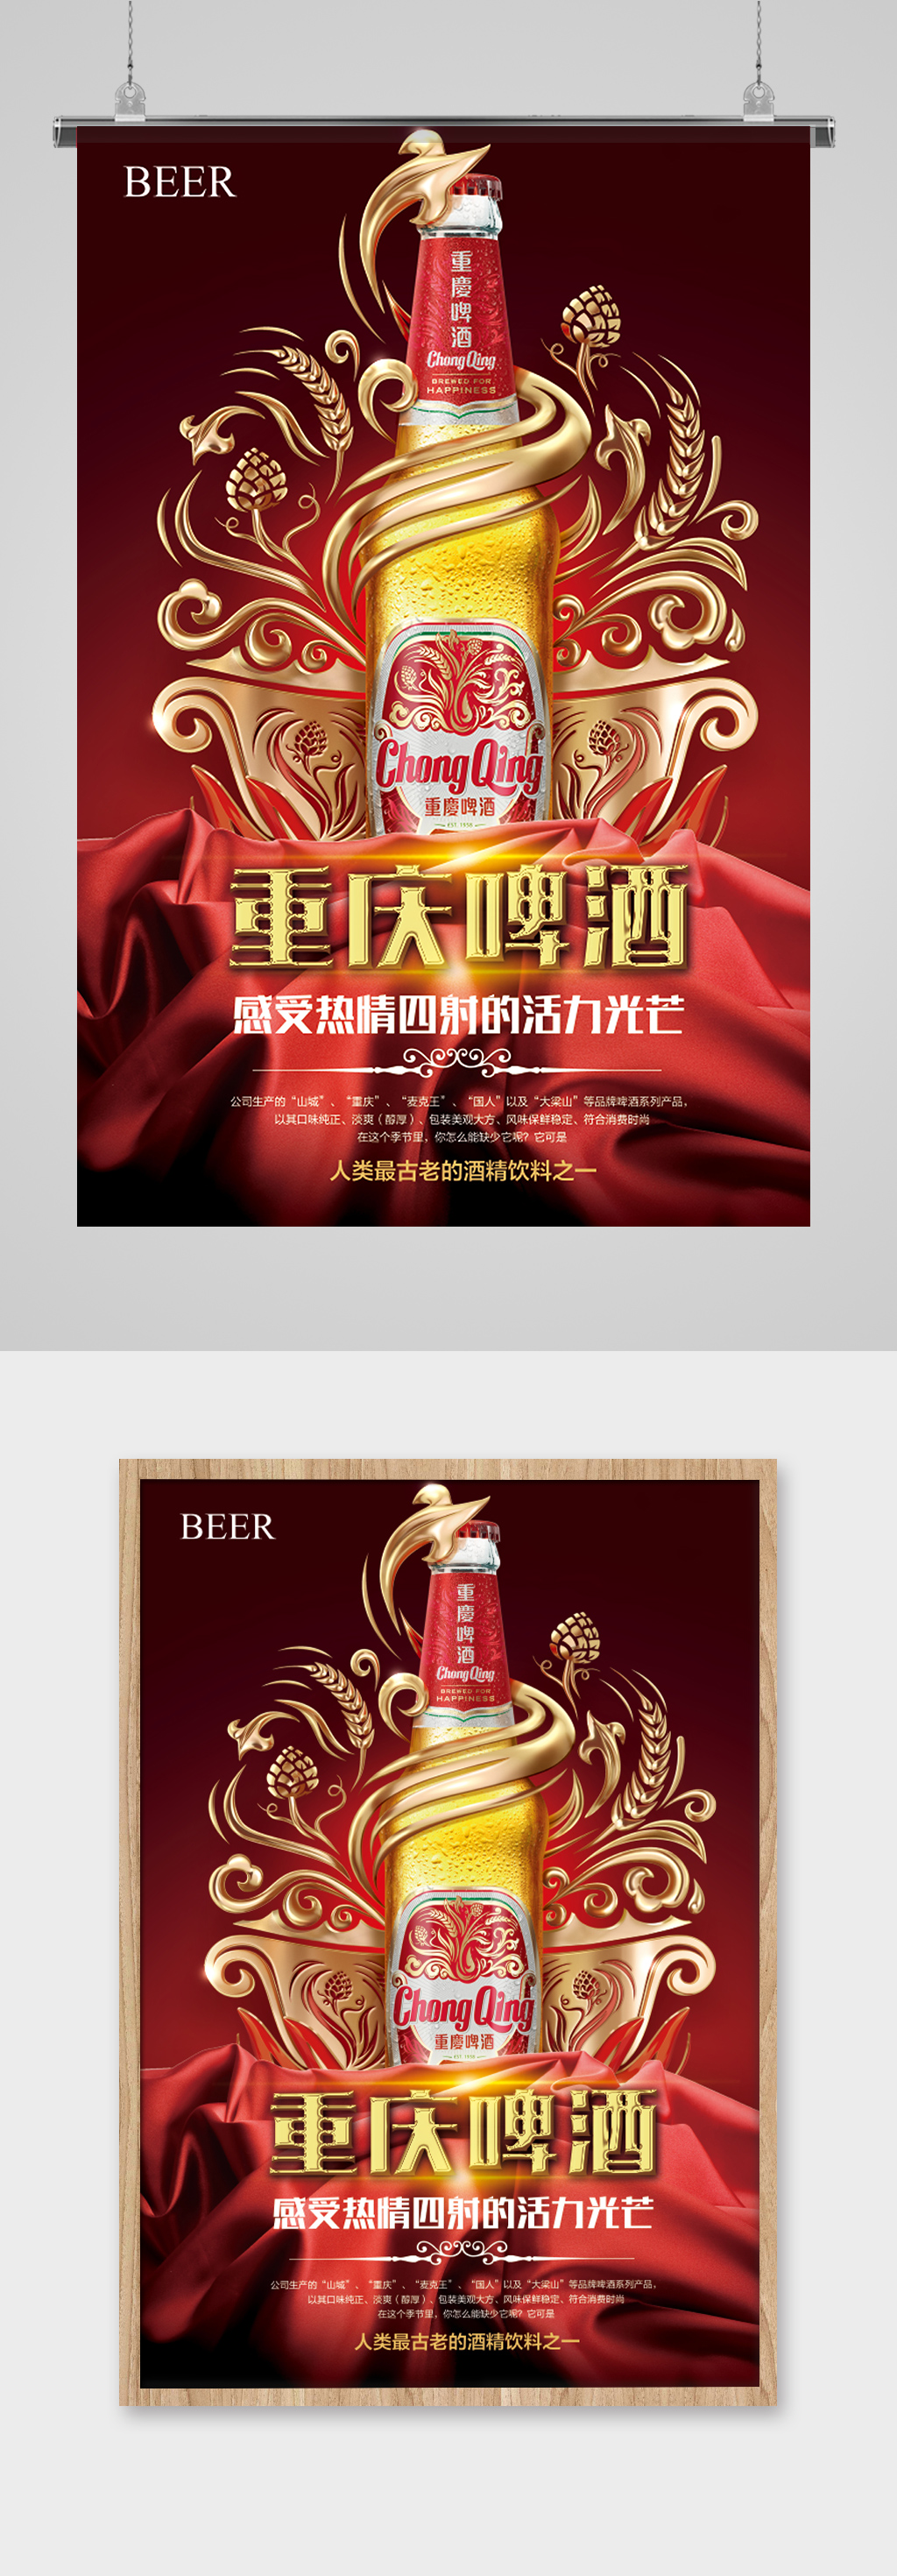 重庆啤酒广告图片